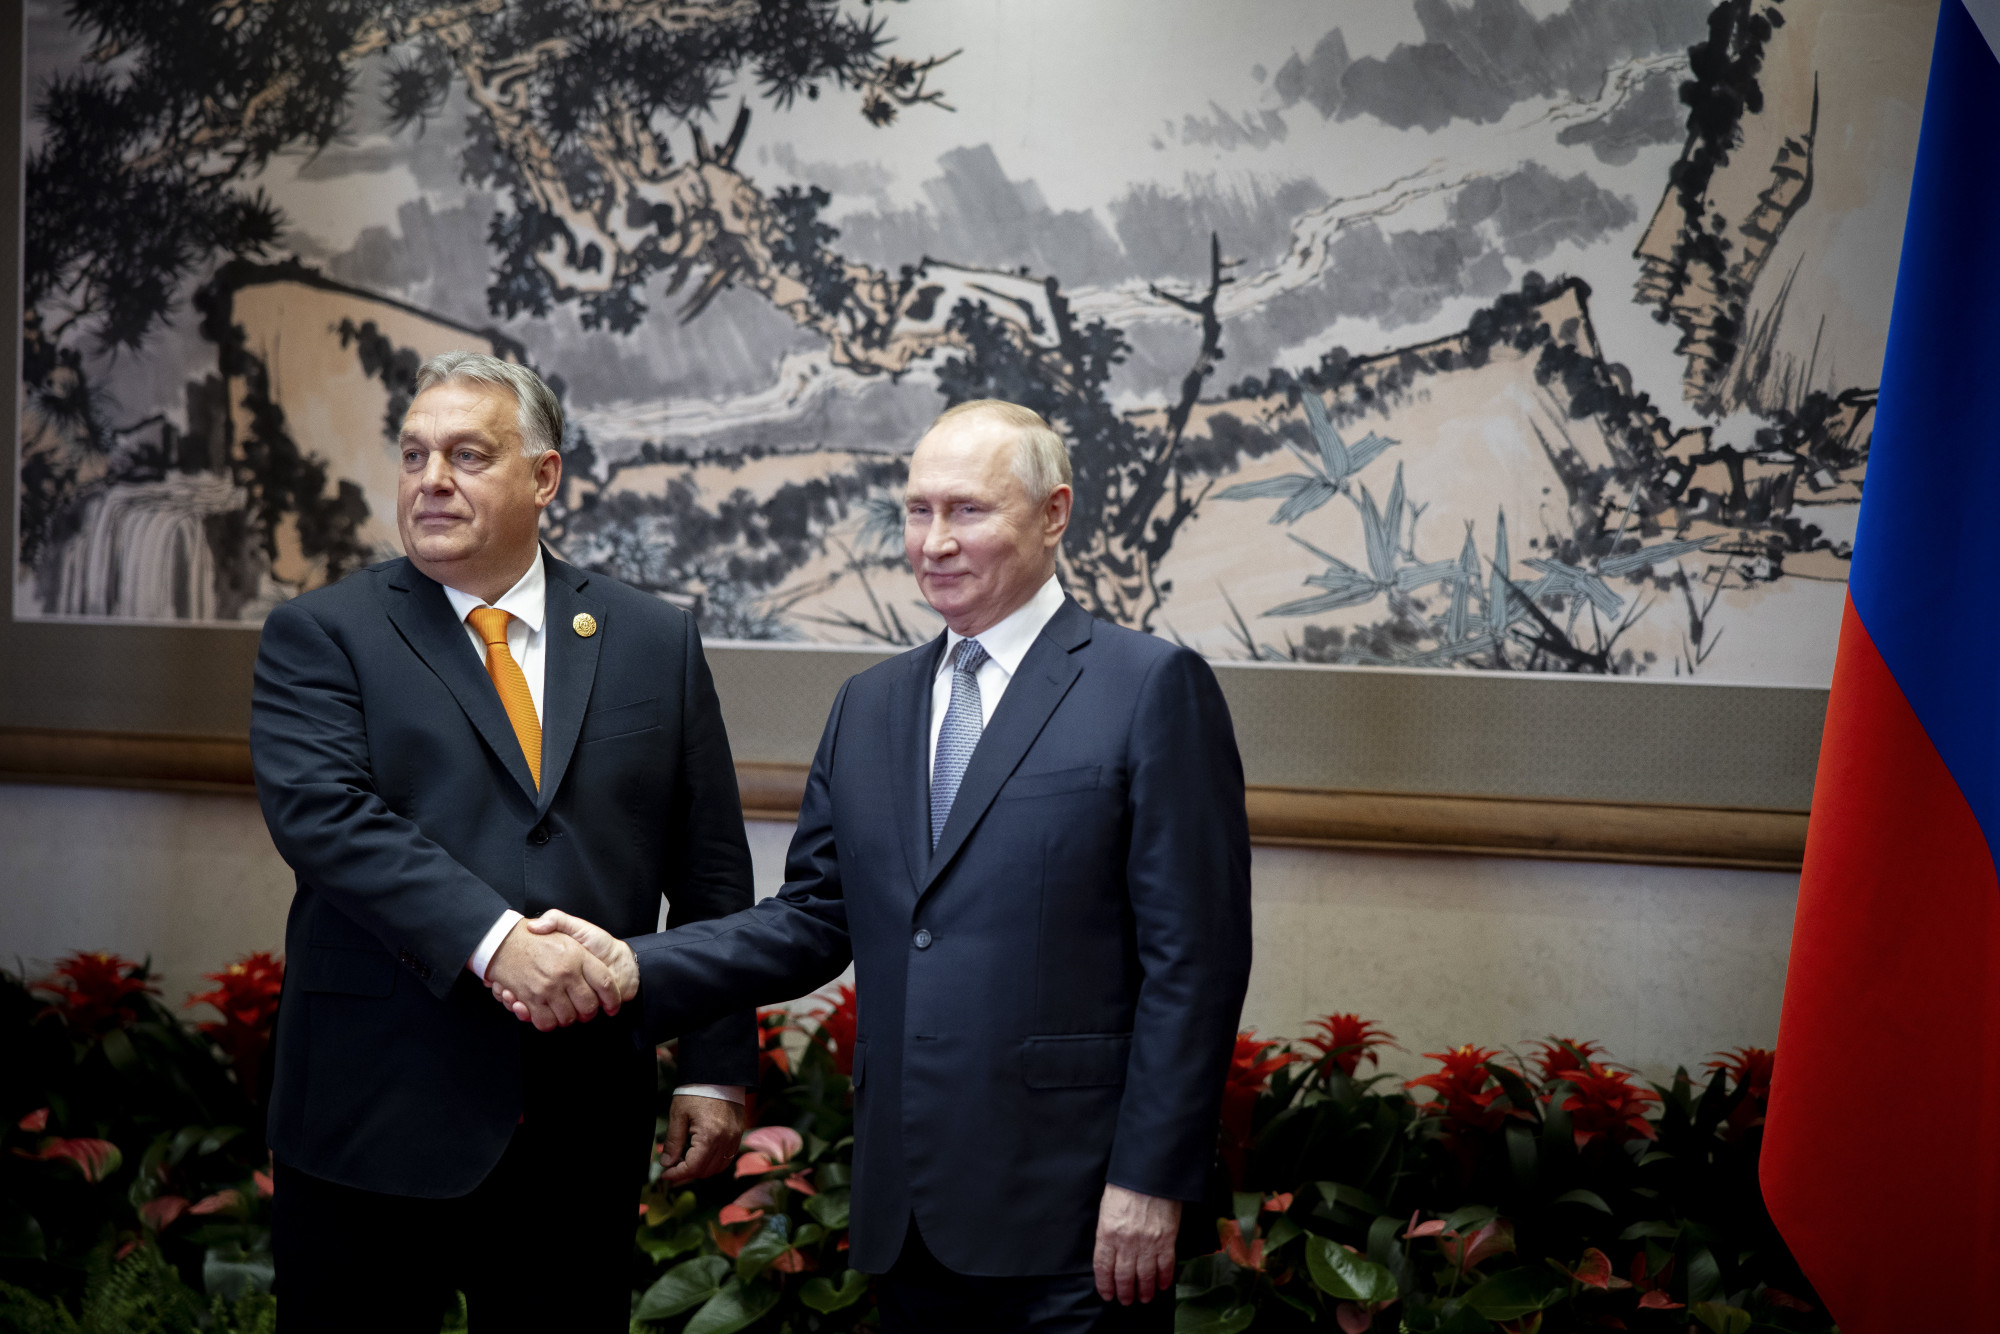 Háború helyett katonai műveletnek nevezte Orbán a háborút a Putyinnal tartott kétoldalú találkozón Pekingben